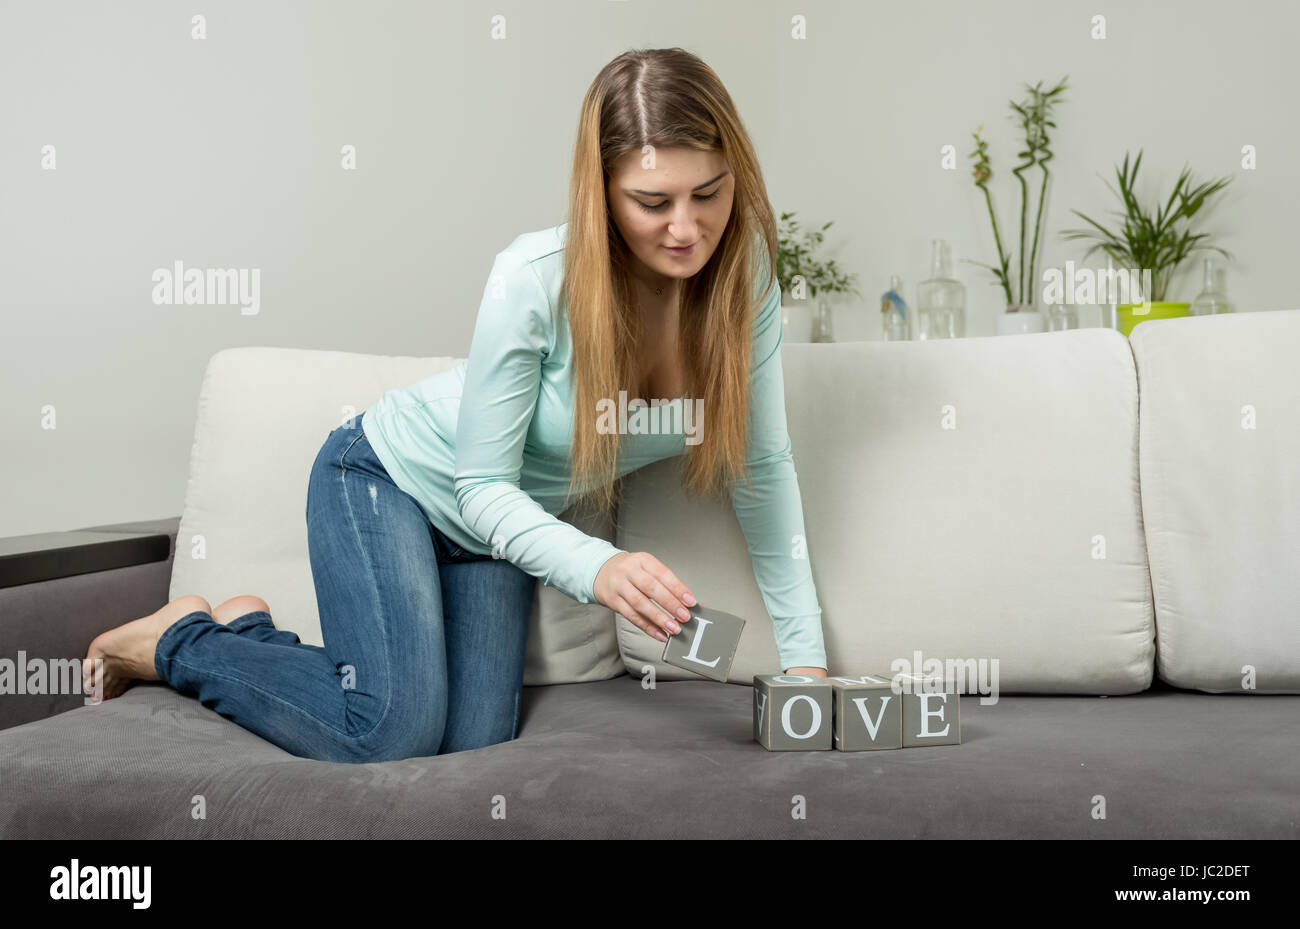 Jeune femme rendant le mot 'Amour' des briques avec des lettres Banque D'Images